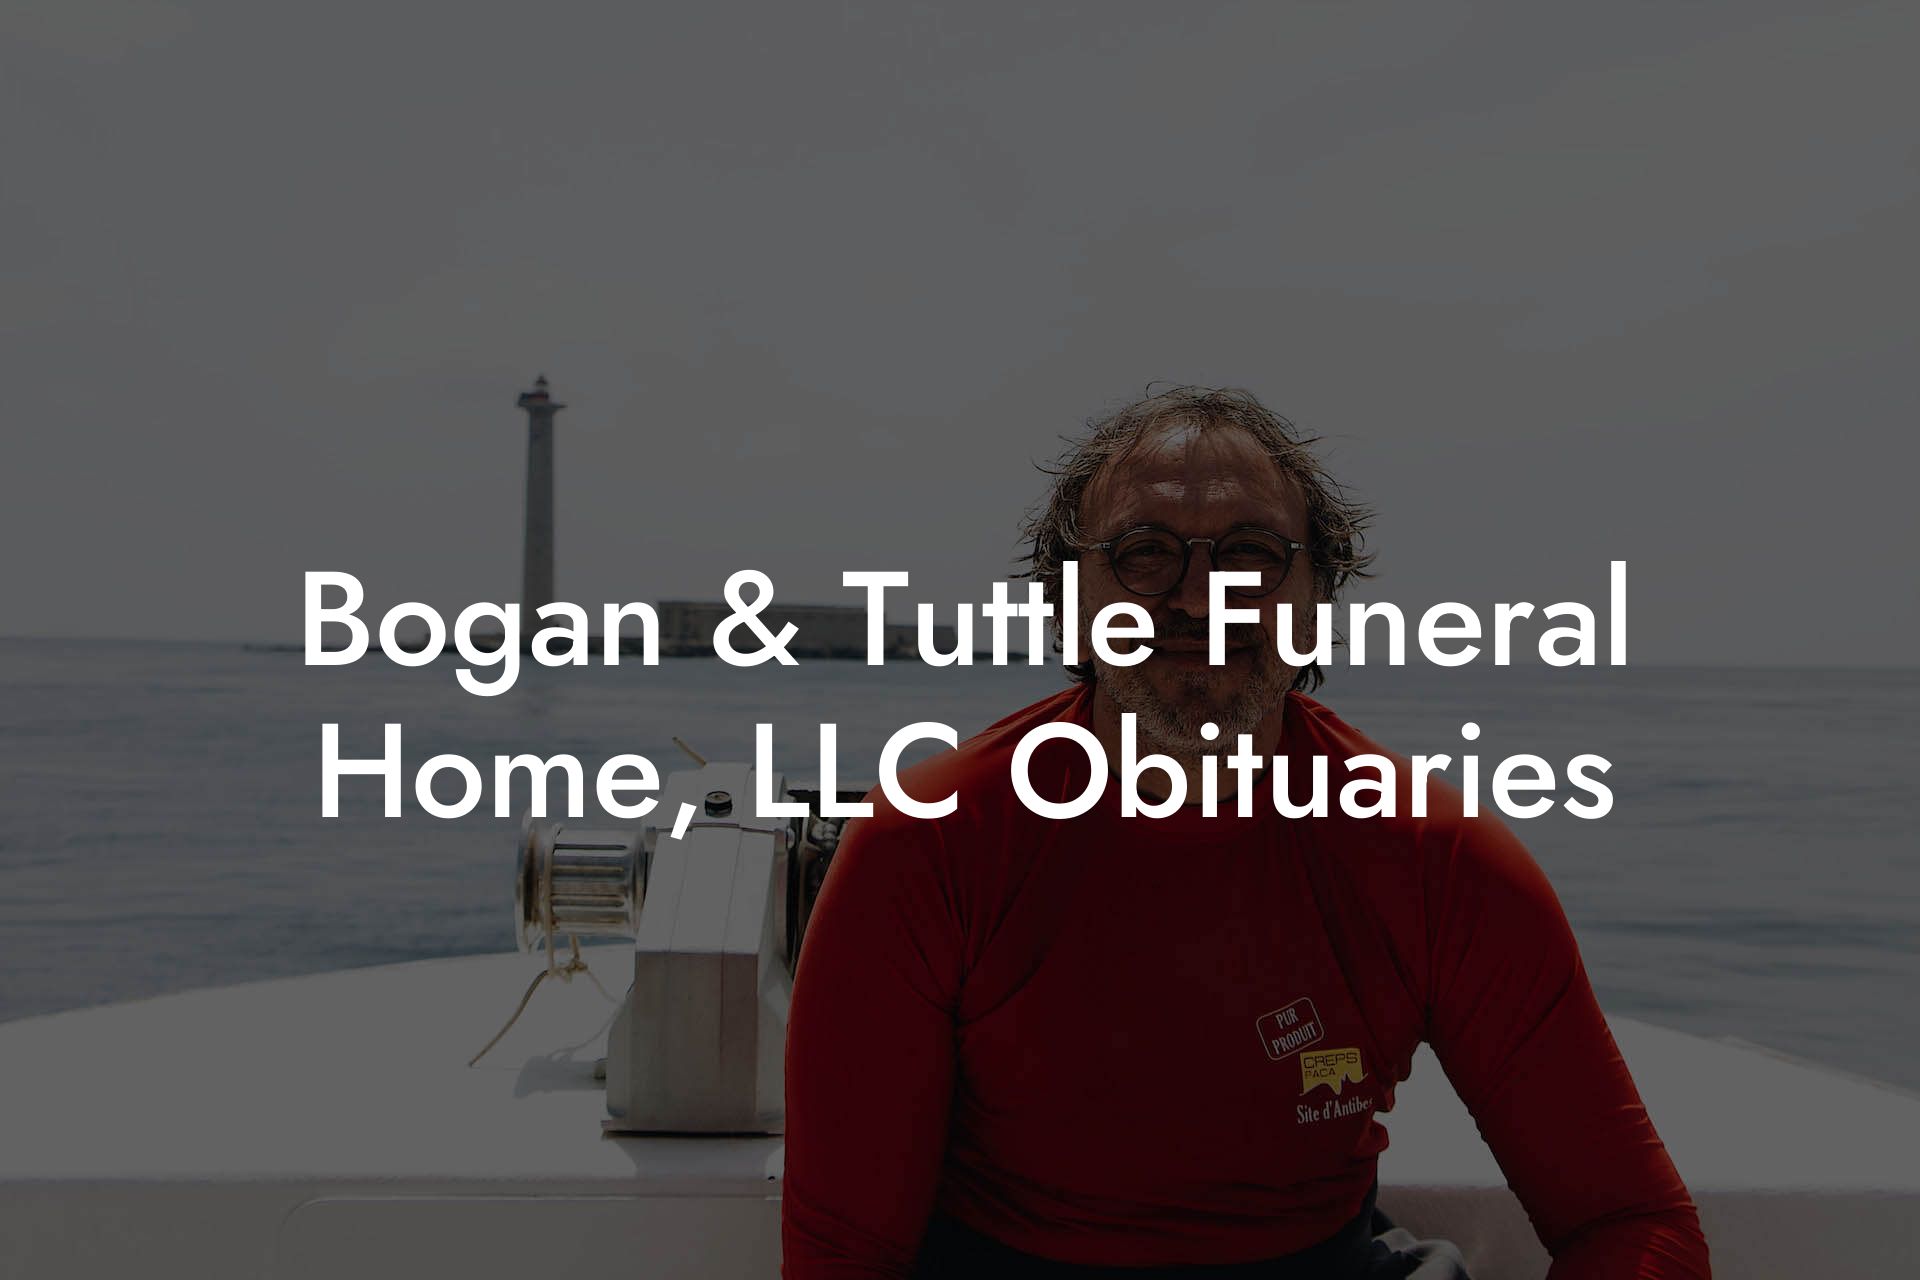 Bogan & Tuttle Funeral Home, LLC Obituaries